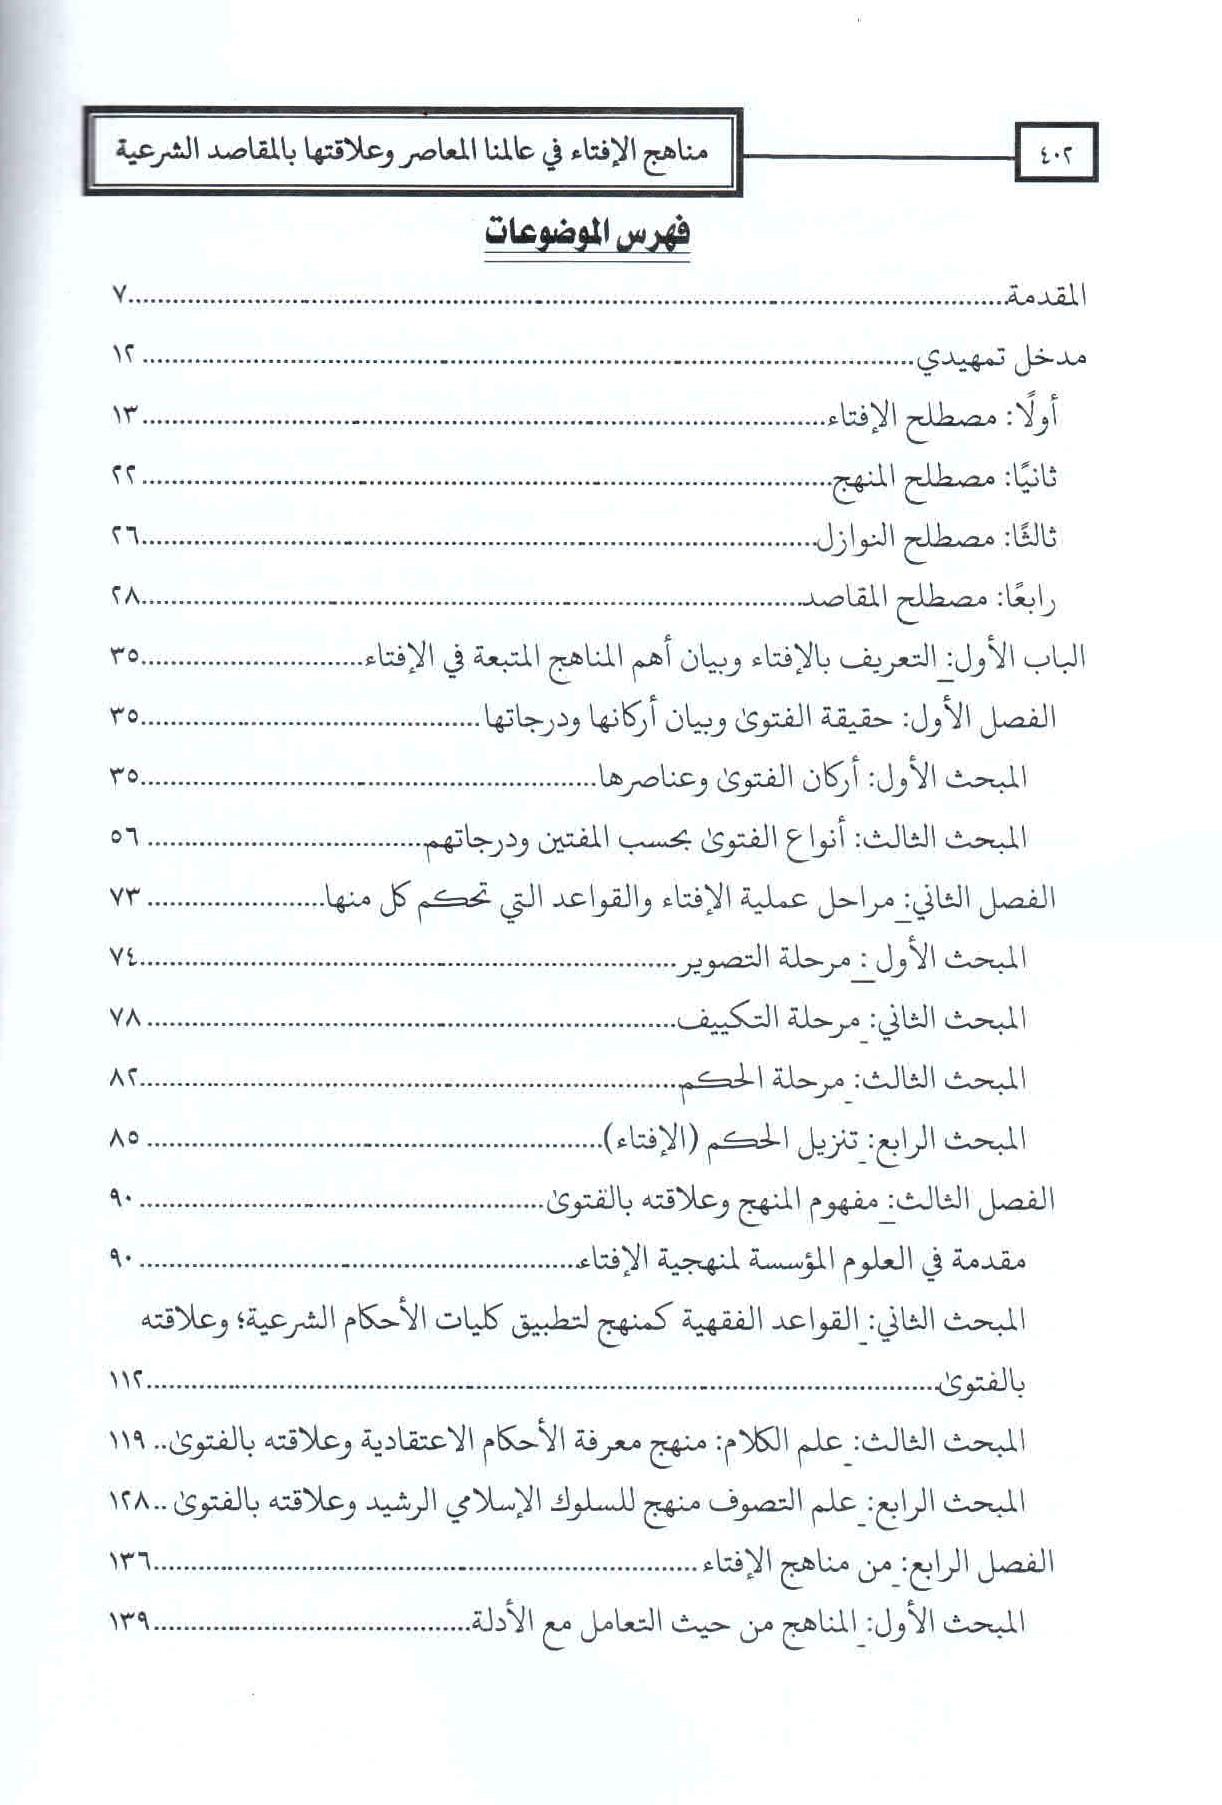 ص. 402. قائمة محتويات كتاب مناهج الإفتاء في عالمنا المعاصر.